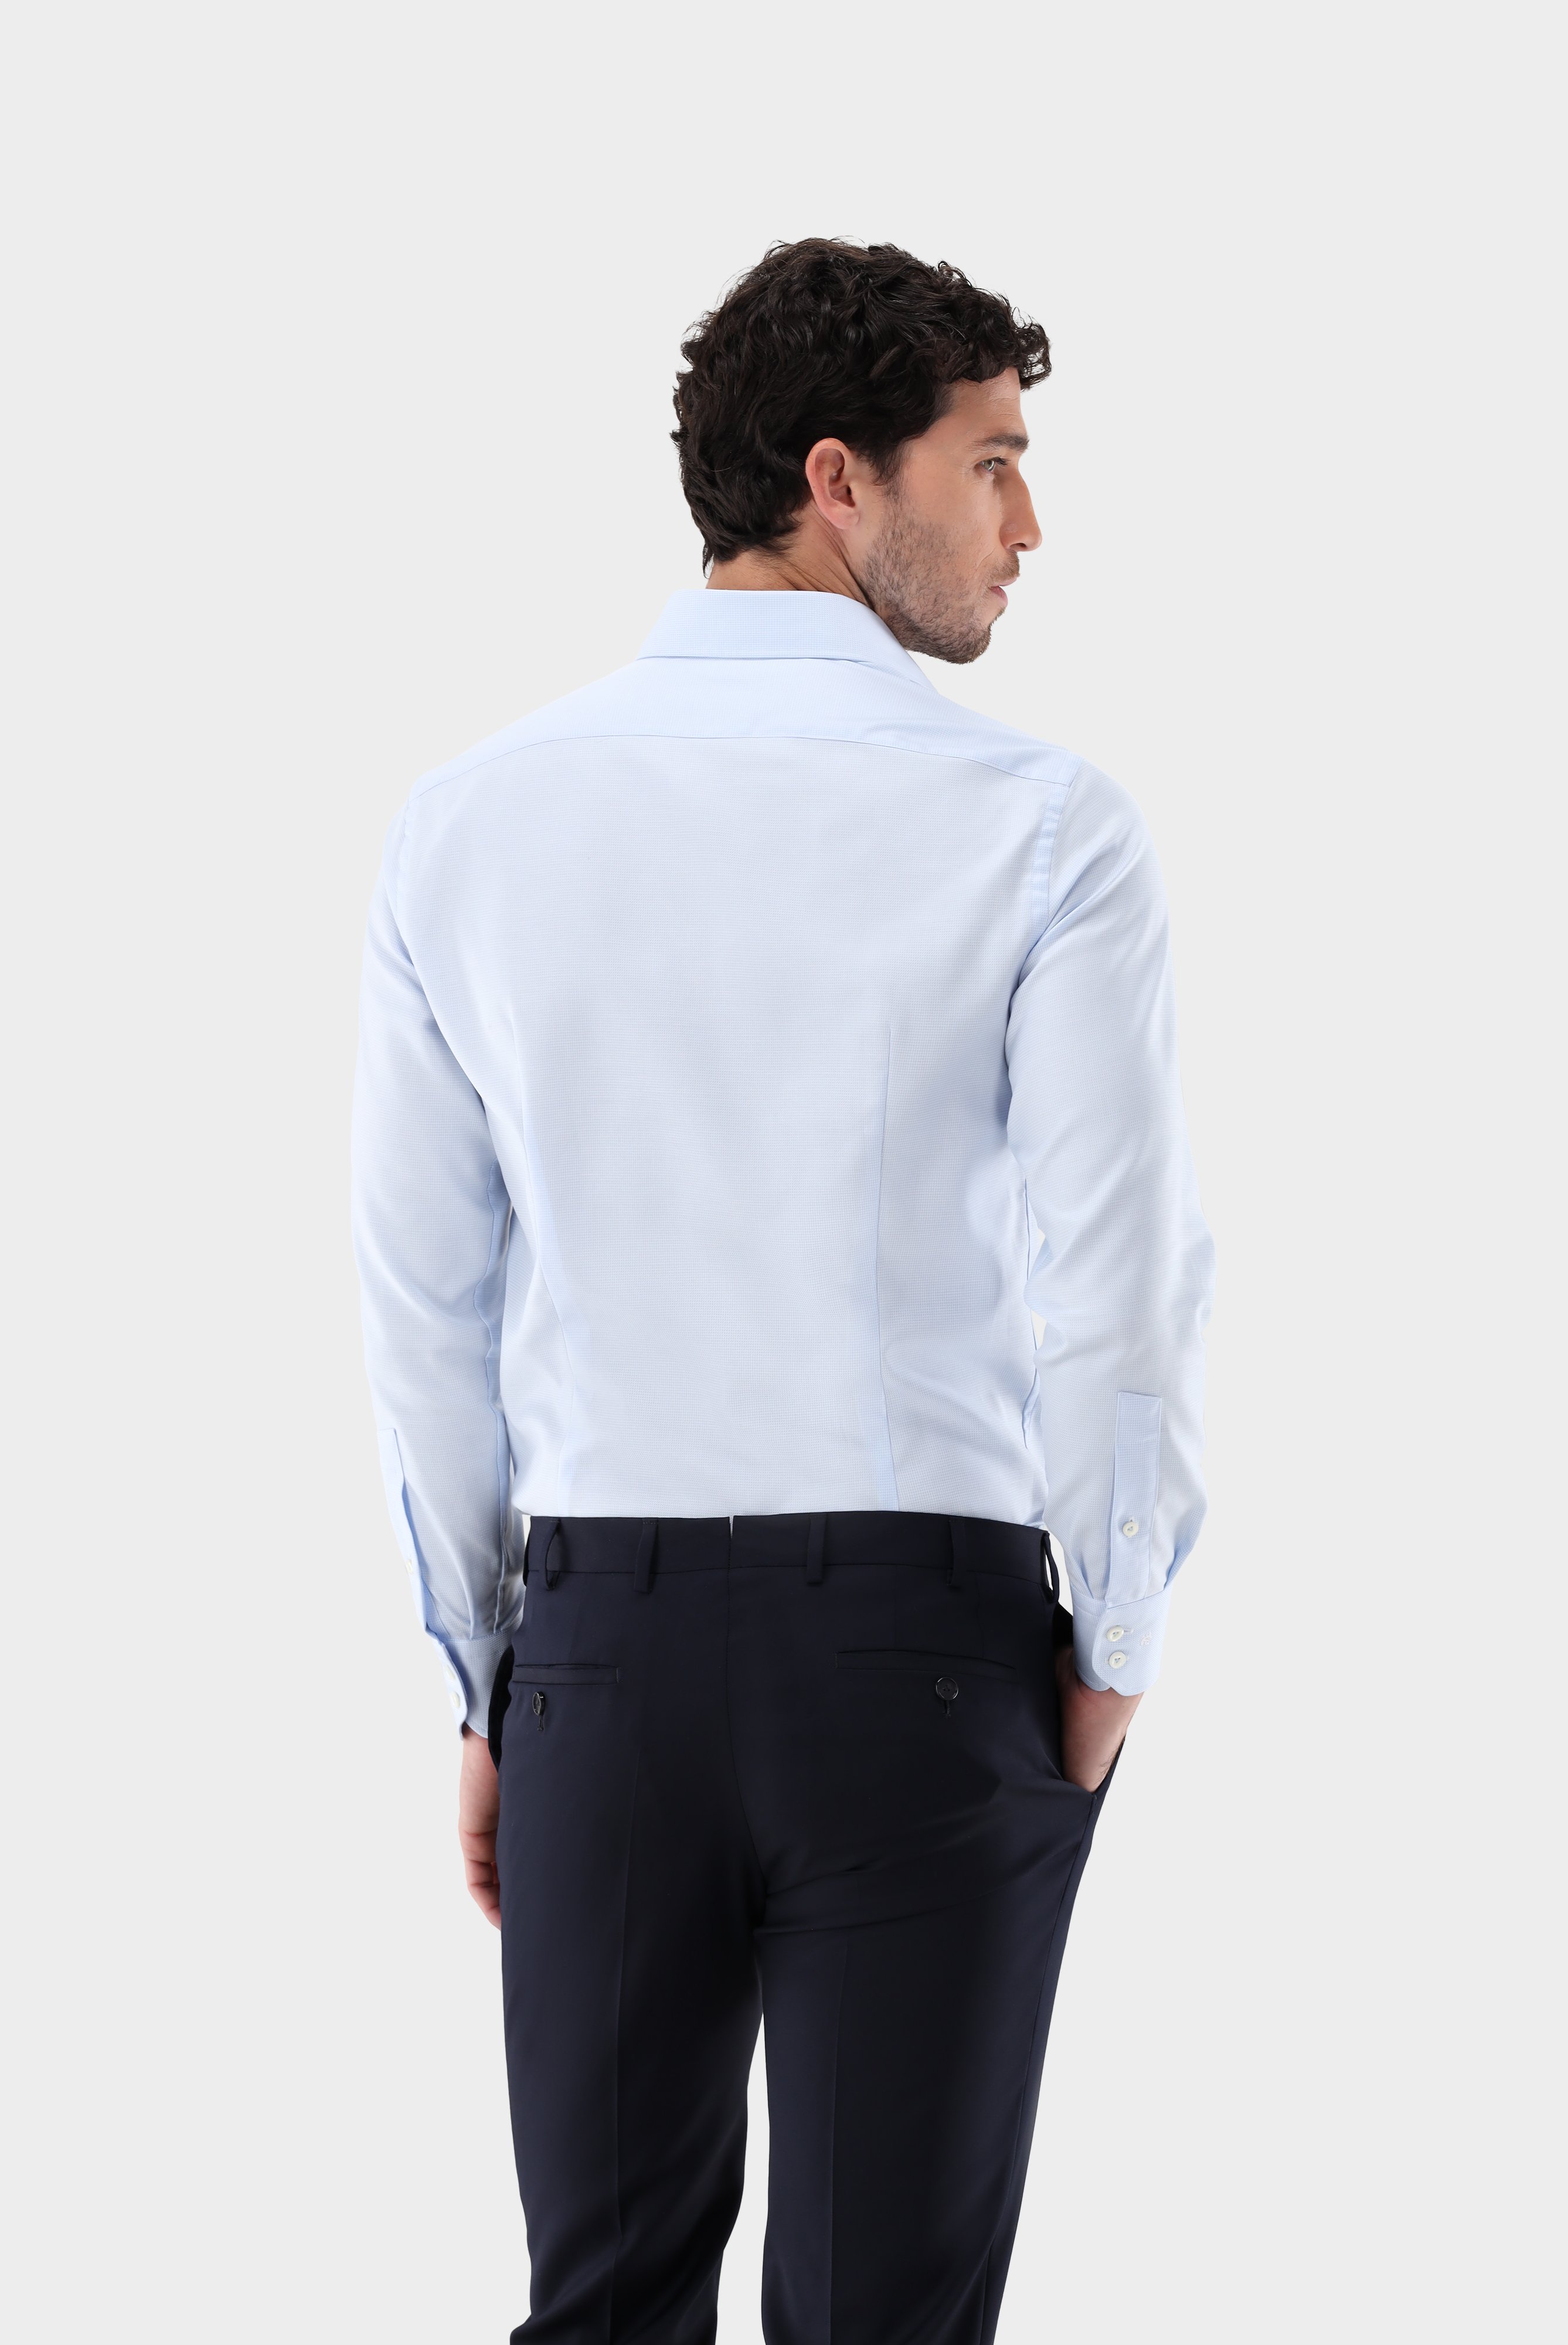 Business Hemden+Twill Hemd mit Struktur Tailor Fit+20.2020.AV.161265.710.37